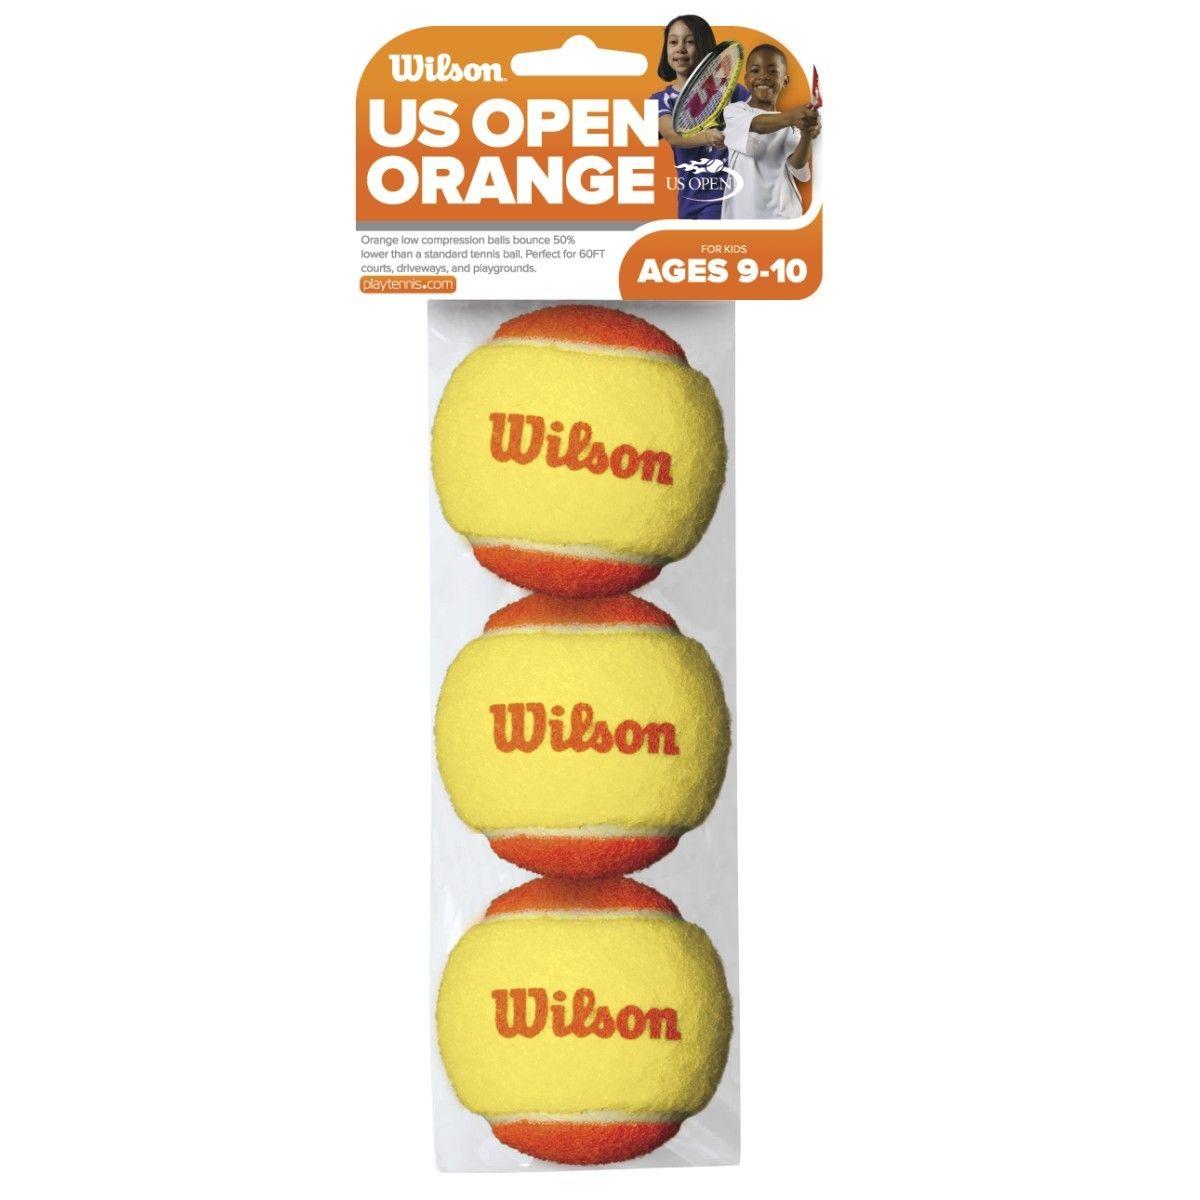 Orange Ball Logo - US Open Orange Ball | Wilson Sporting Goods